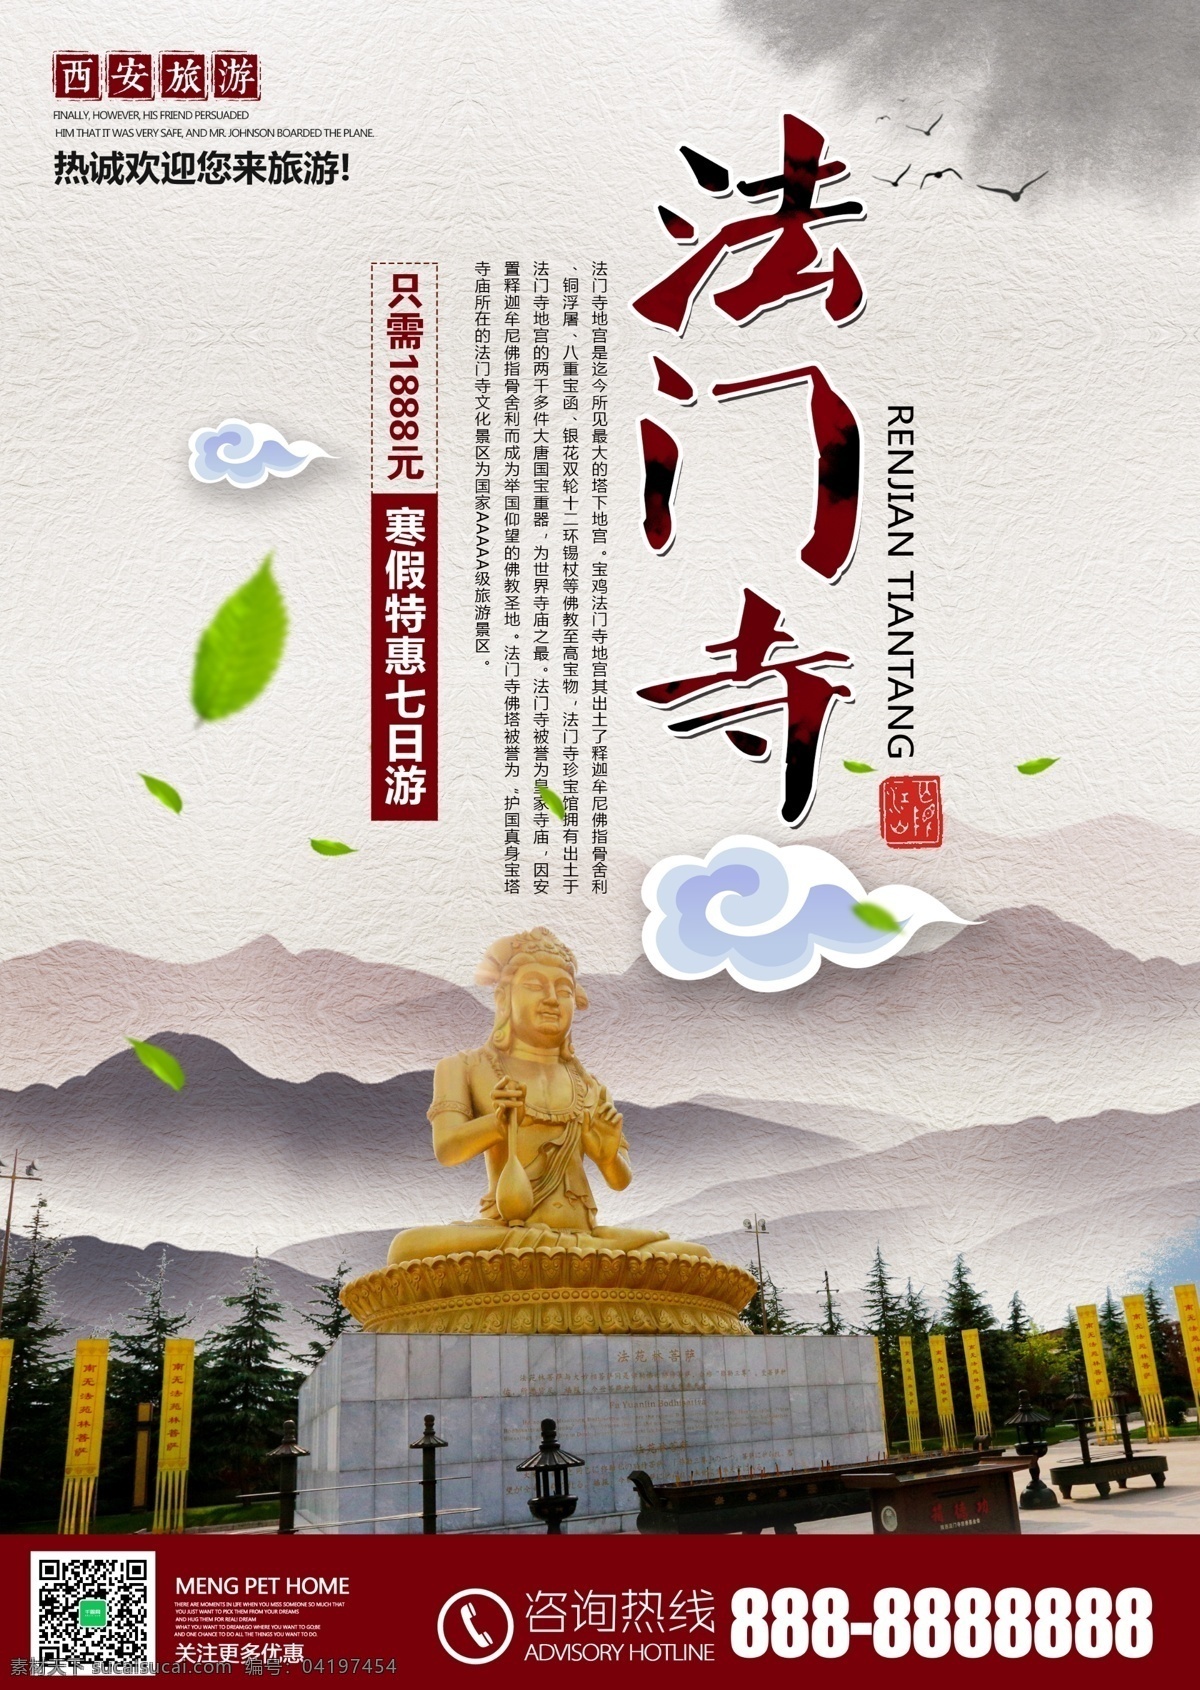 西安 法门寺 旅游 旅行社 宣传 促销活动 海报 咸阳 自驾游